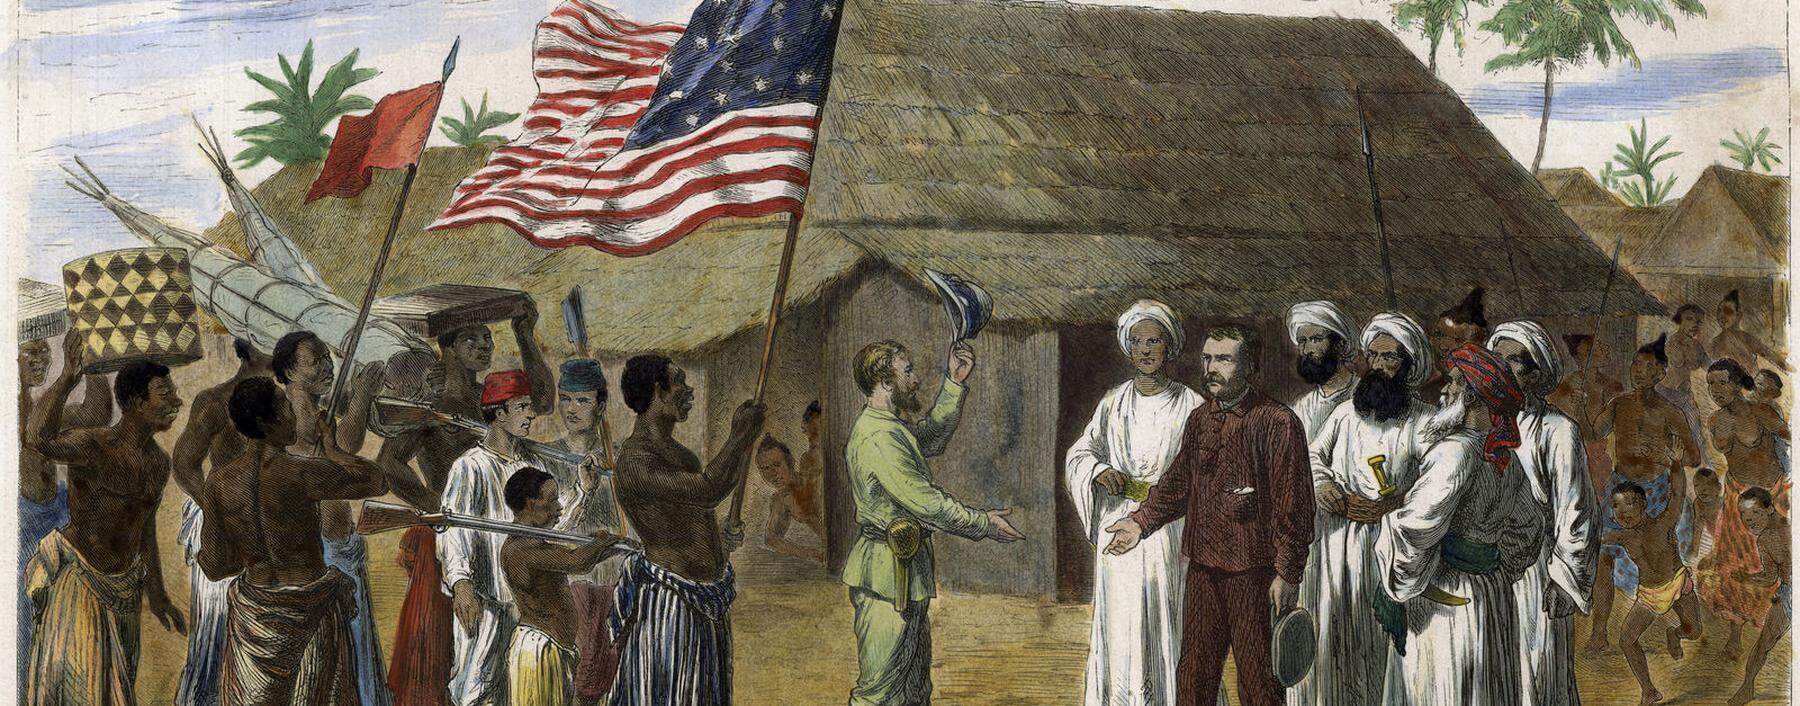 Stanley ließ vor der Begegnung die US-Flagge hissen, um Livingstone würdevoll gegenüberzutreten.